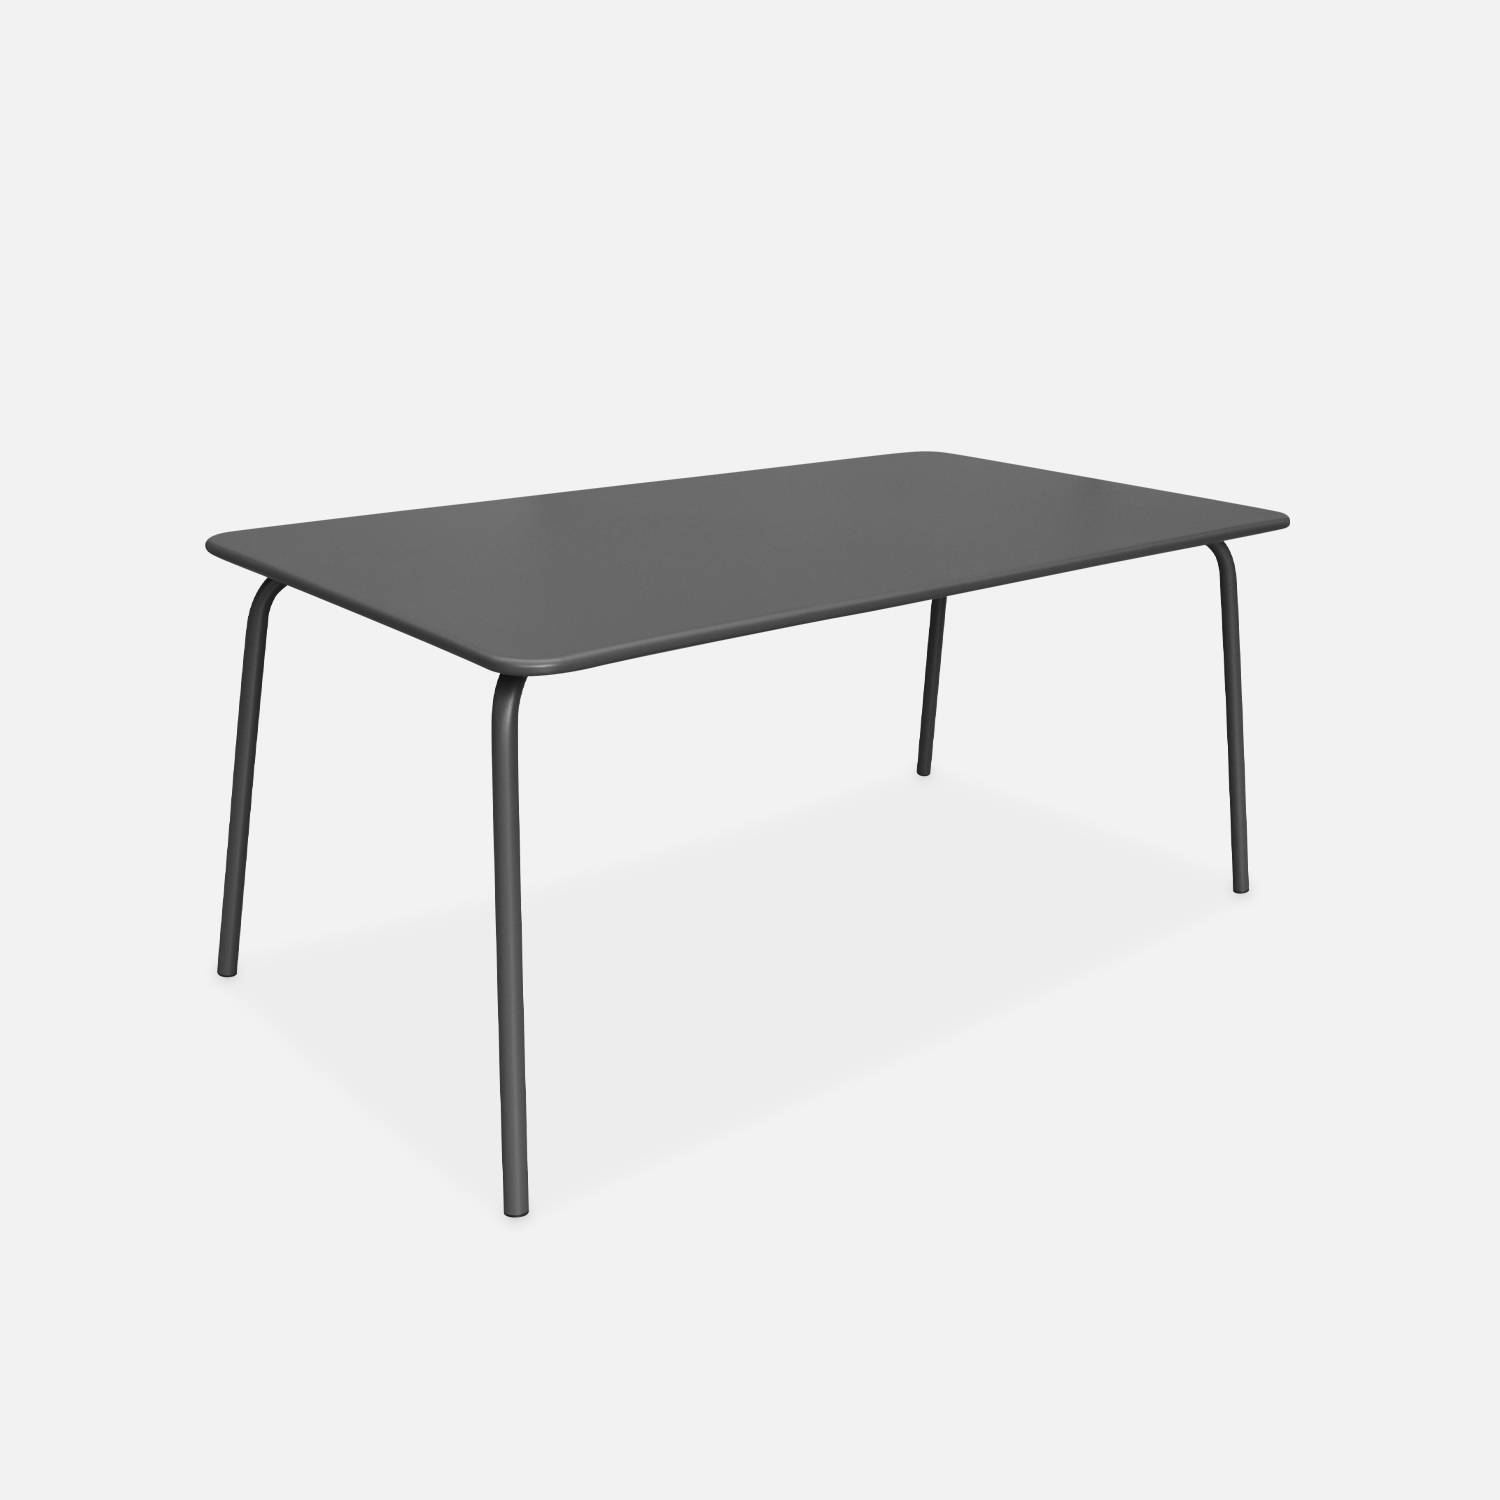 Gartentisch aus Metall 160x90cm, grau l sweeek